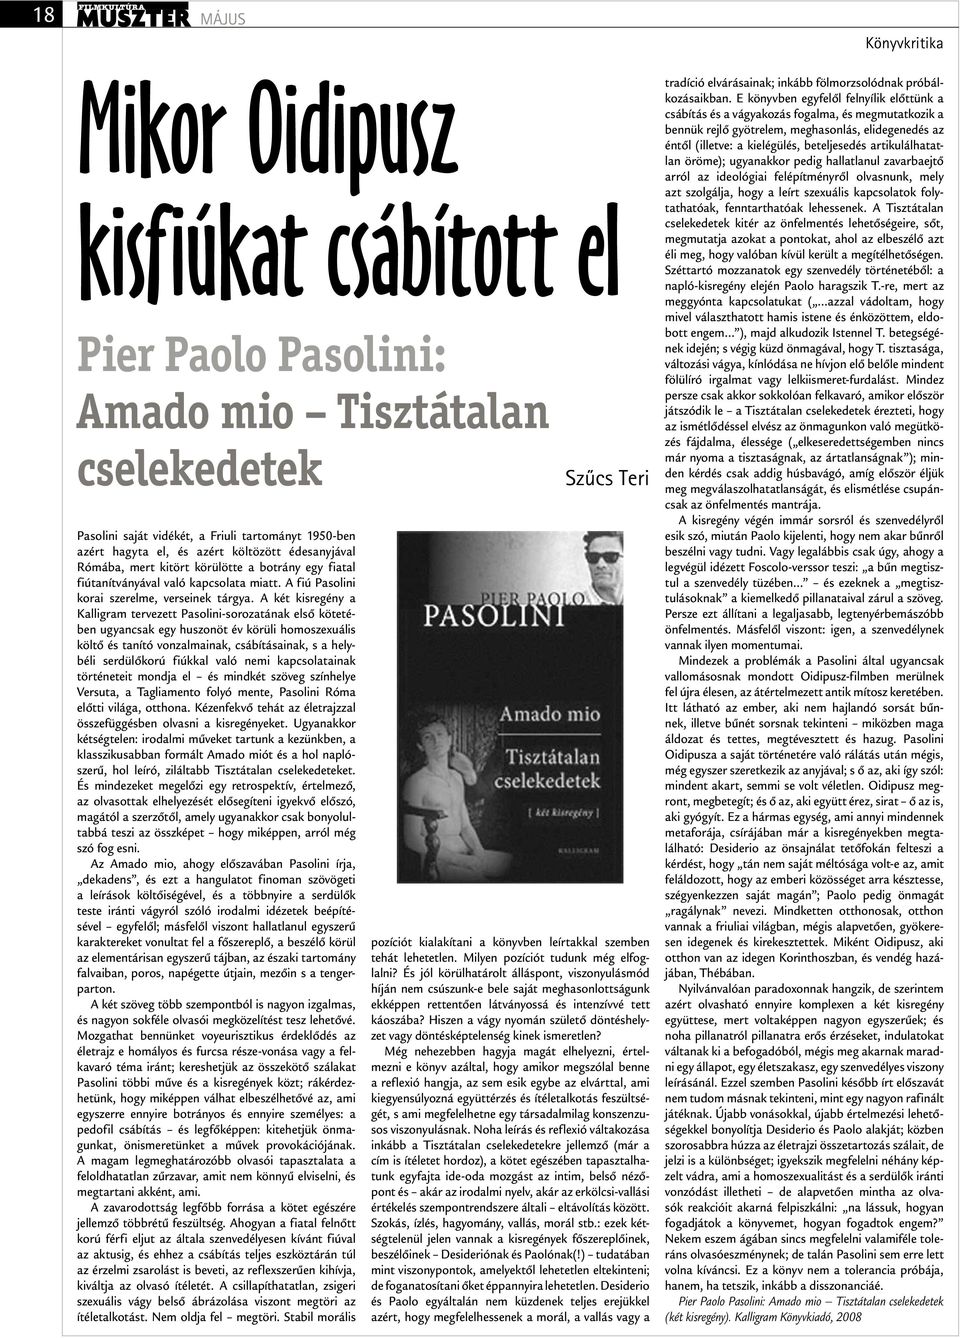 A két kisregény a Kalligram tervezett Pasolini-sorozatának első kötetében ugyancsak egy huszonöt év körüli homo szexuális költő és tanító vonzalmainak, csábításainak, s a helybéli serdülőkorú fiúkkal